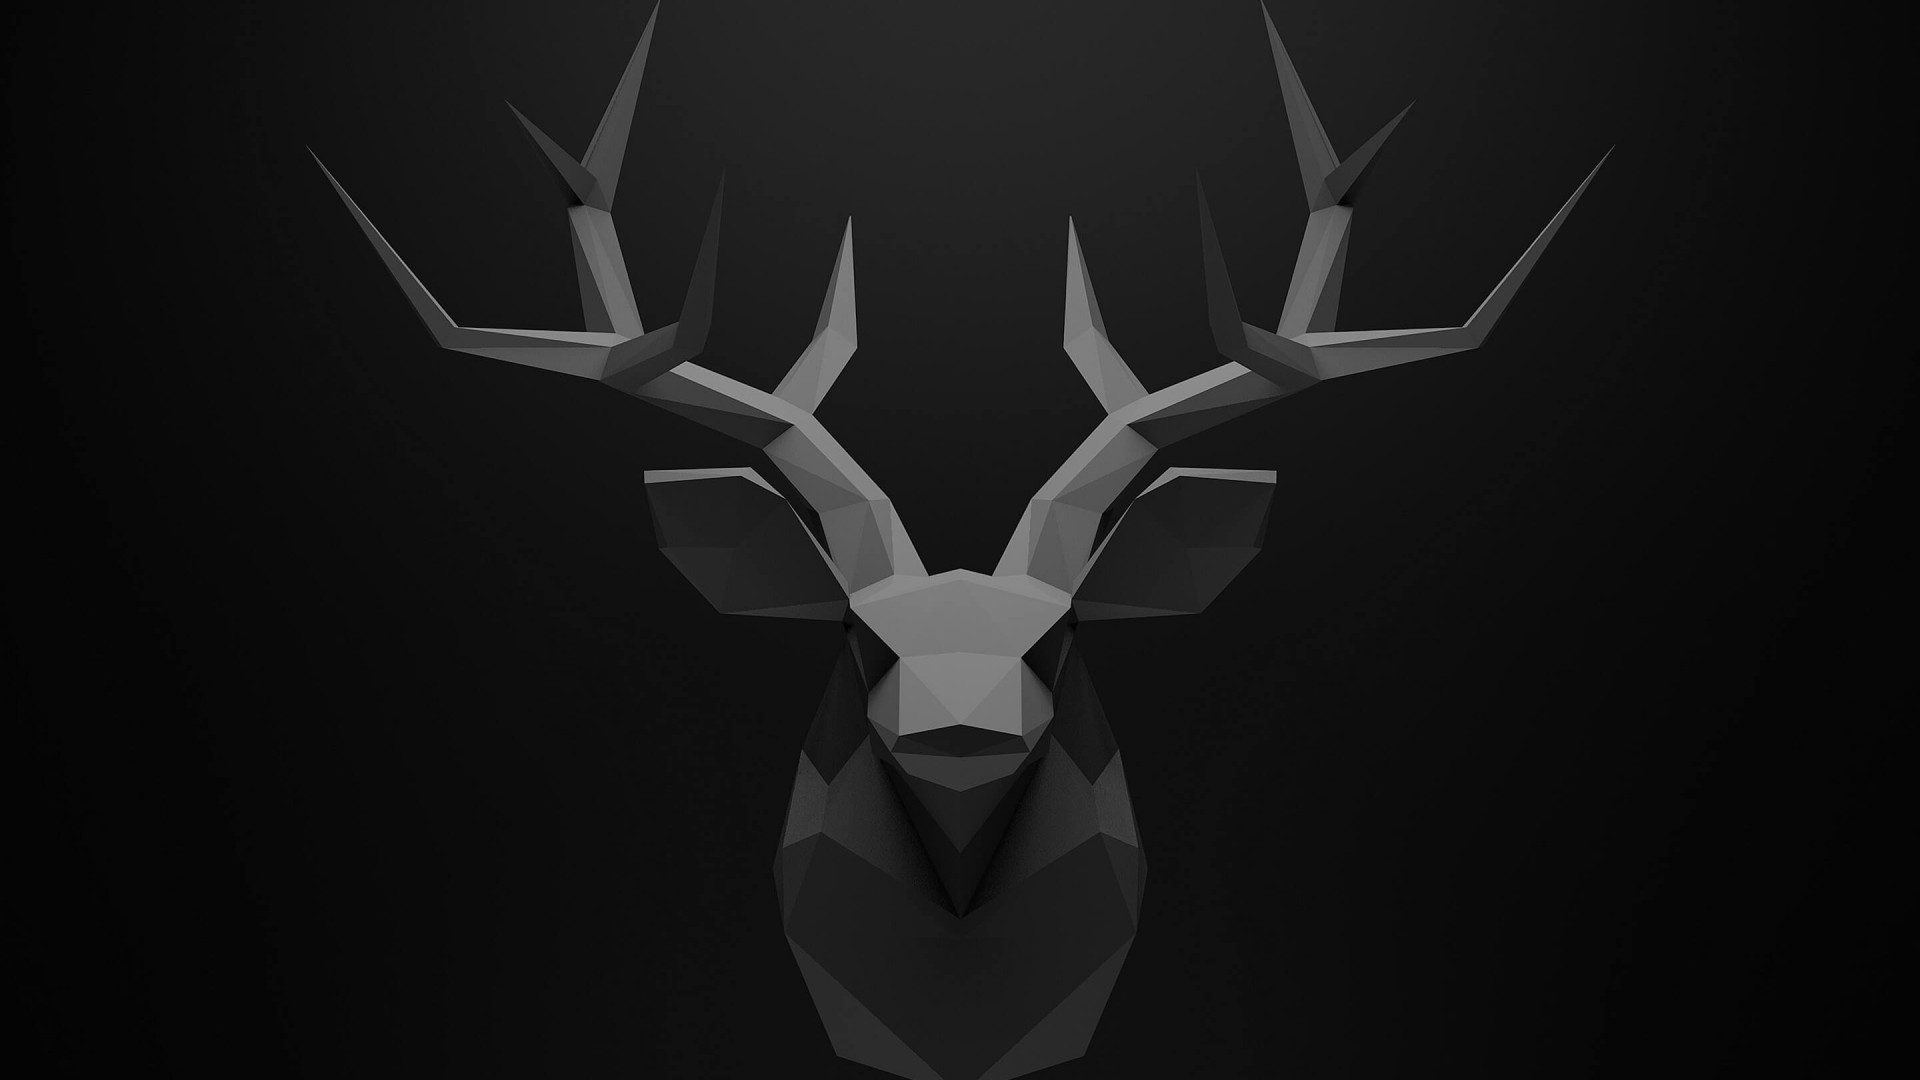 kepala rusa tanduk wallpaper hd 3D